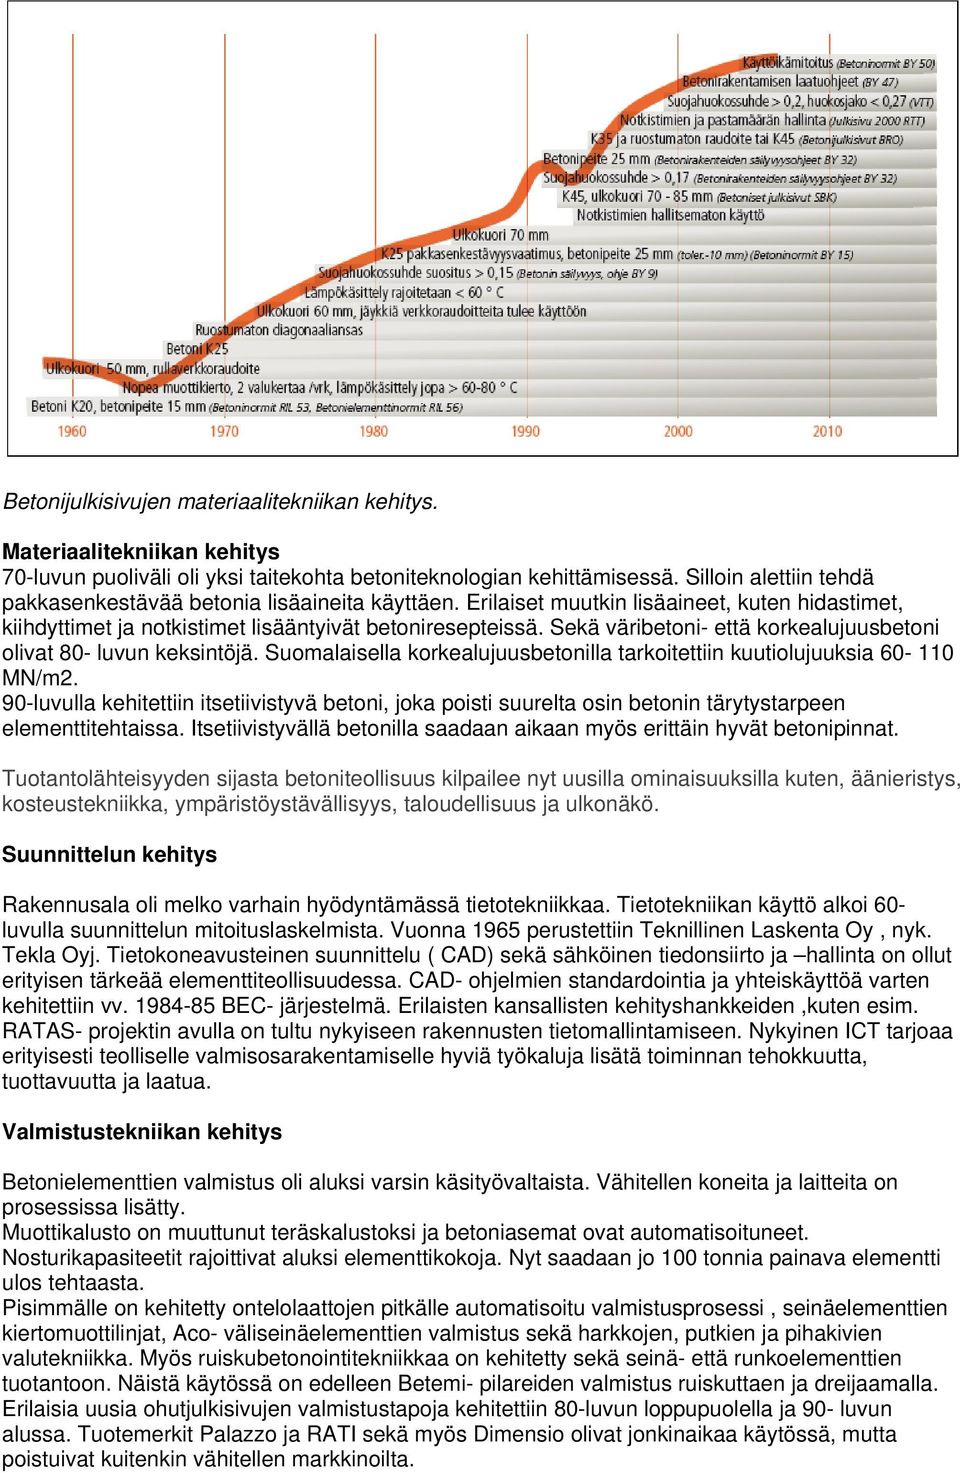 Sekä väribetoni- että korkealujuusbetoni olivat 80- luvun keksintöjä. Suomalaisella korkealujuusbetonilla tarkoitettiin kuutiolujuuksia 60-110 MN/m2.